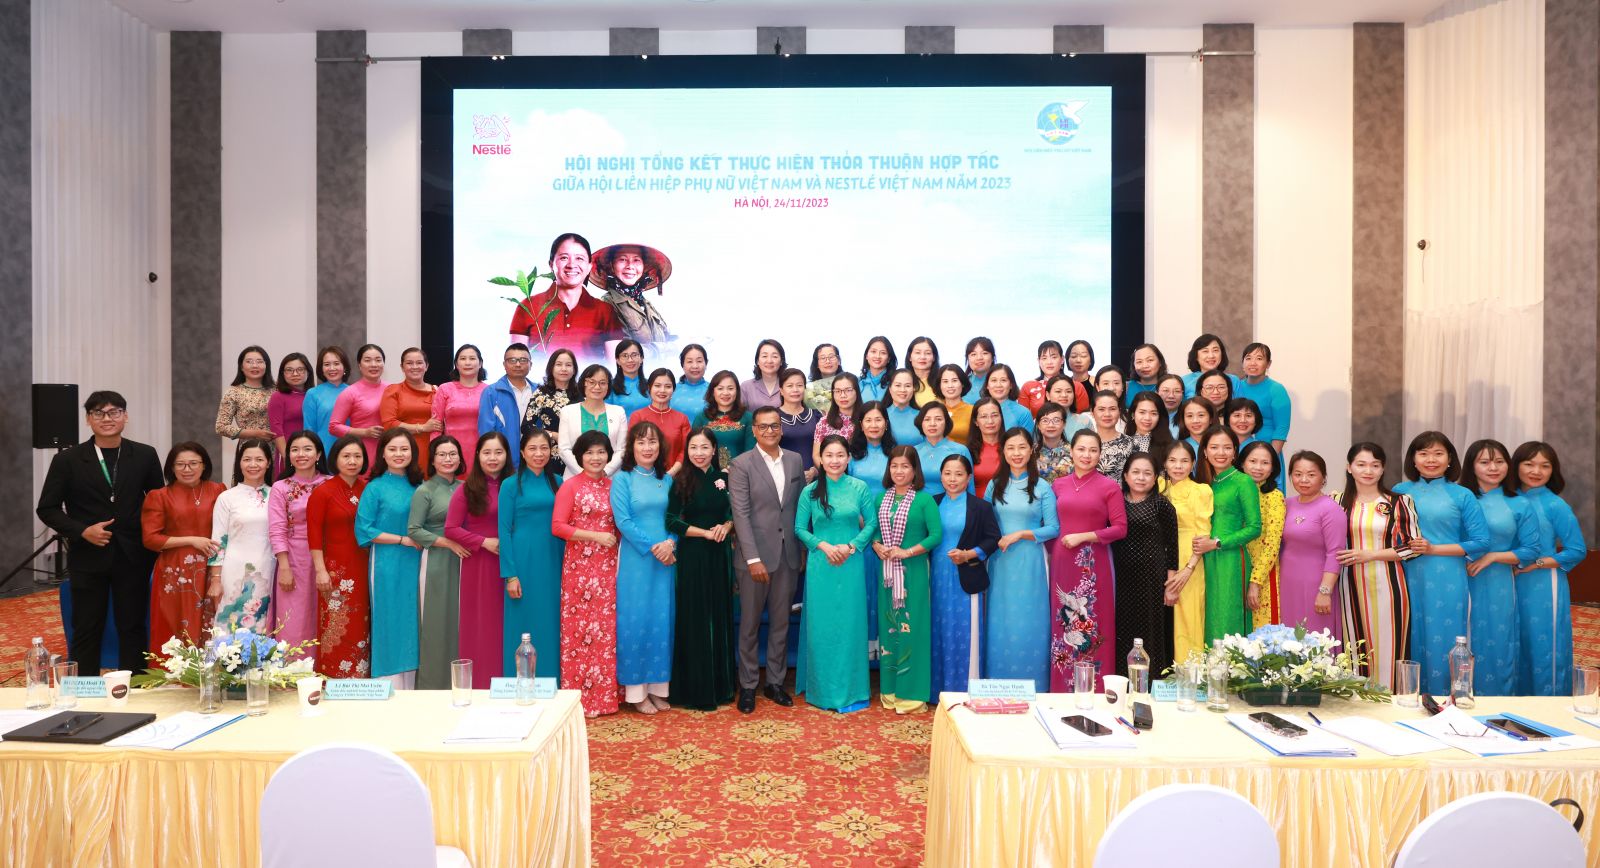 Đại biểu tham dự Hội nghị tổng kết thực hiện chương trình hợp tác giữa Hội LHPN Việt Nam và Nestlé Việt Nam năm 2023